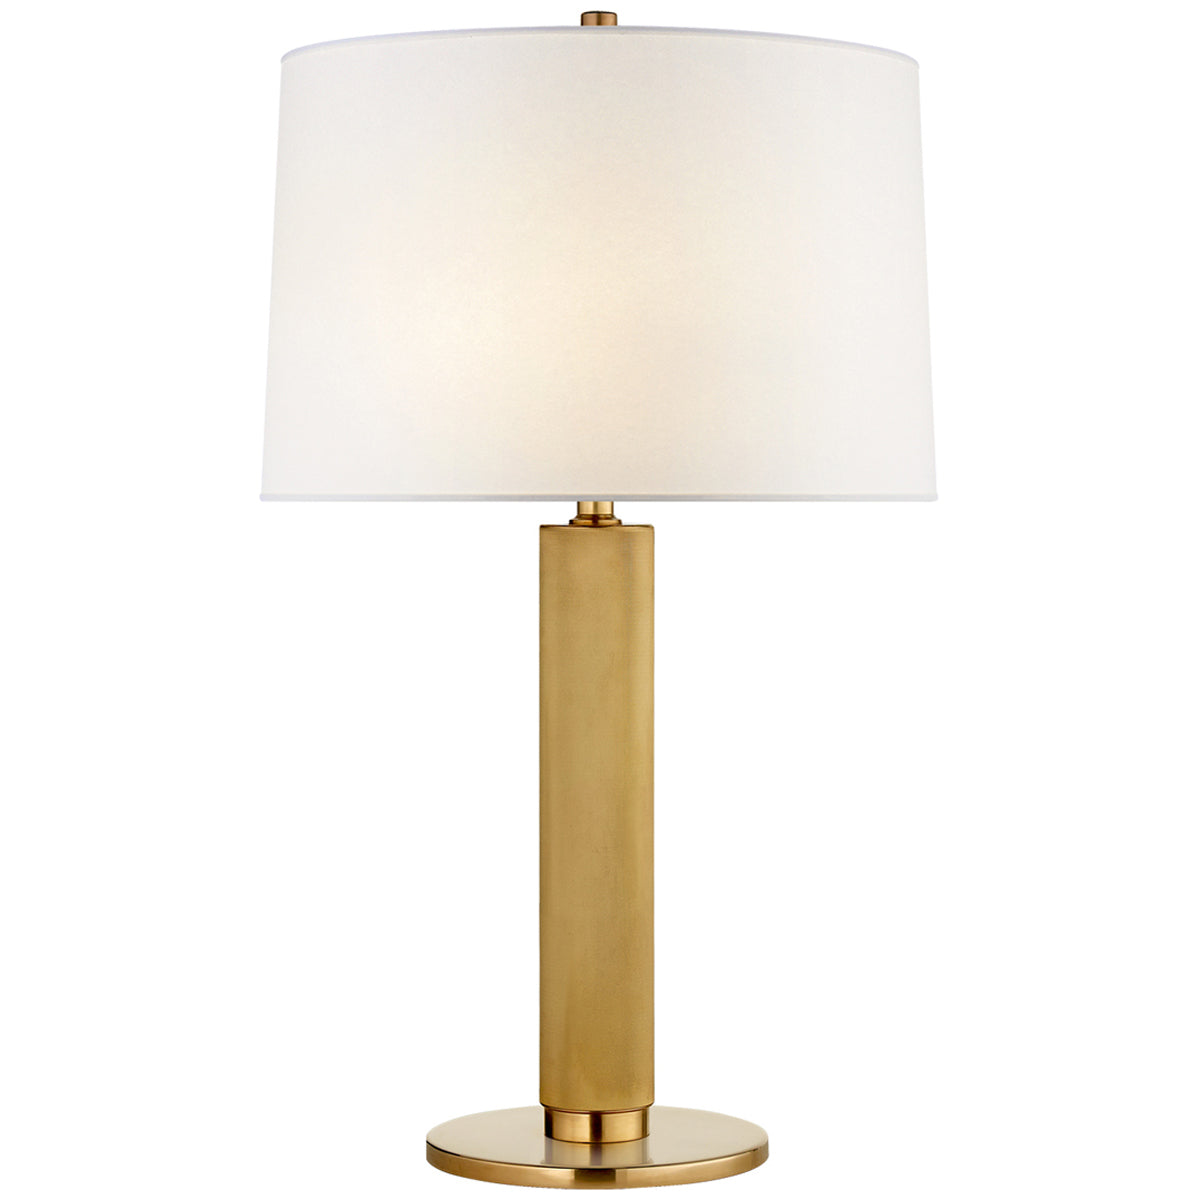 Visual Comfort, Barrett Medium Knurled Table Lamp, Table & Task